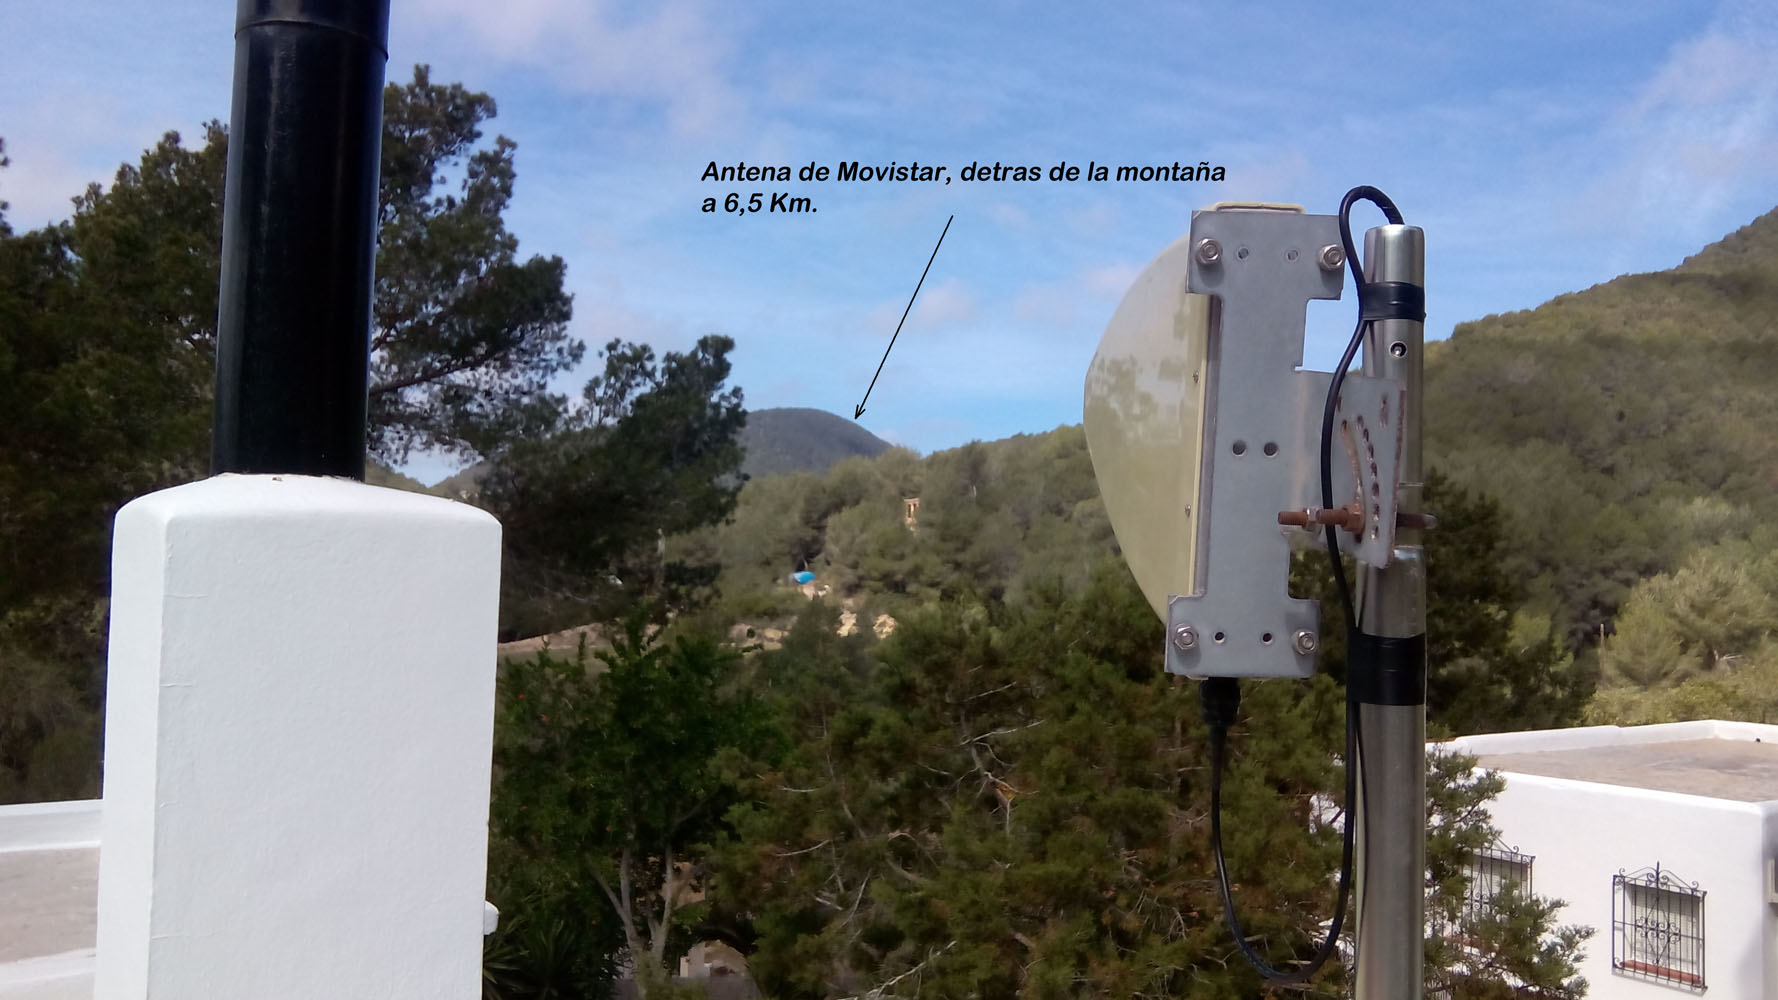 Solucionado: Re: ¿Y si no llega el ADSL…? ¡Hogar 3G hasta 10 Mb y más! -  Página 18 - Comunidad Movistar